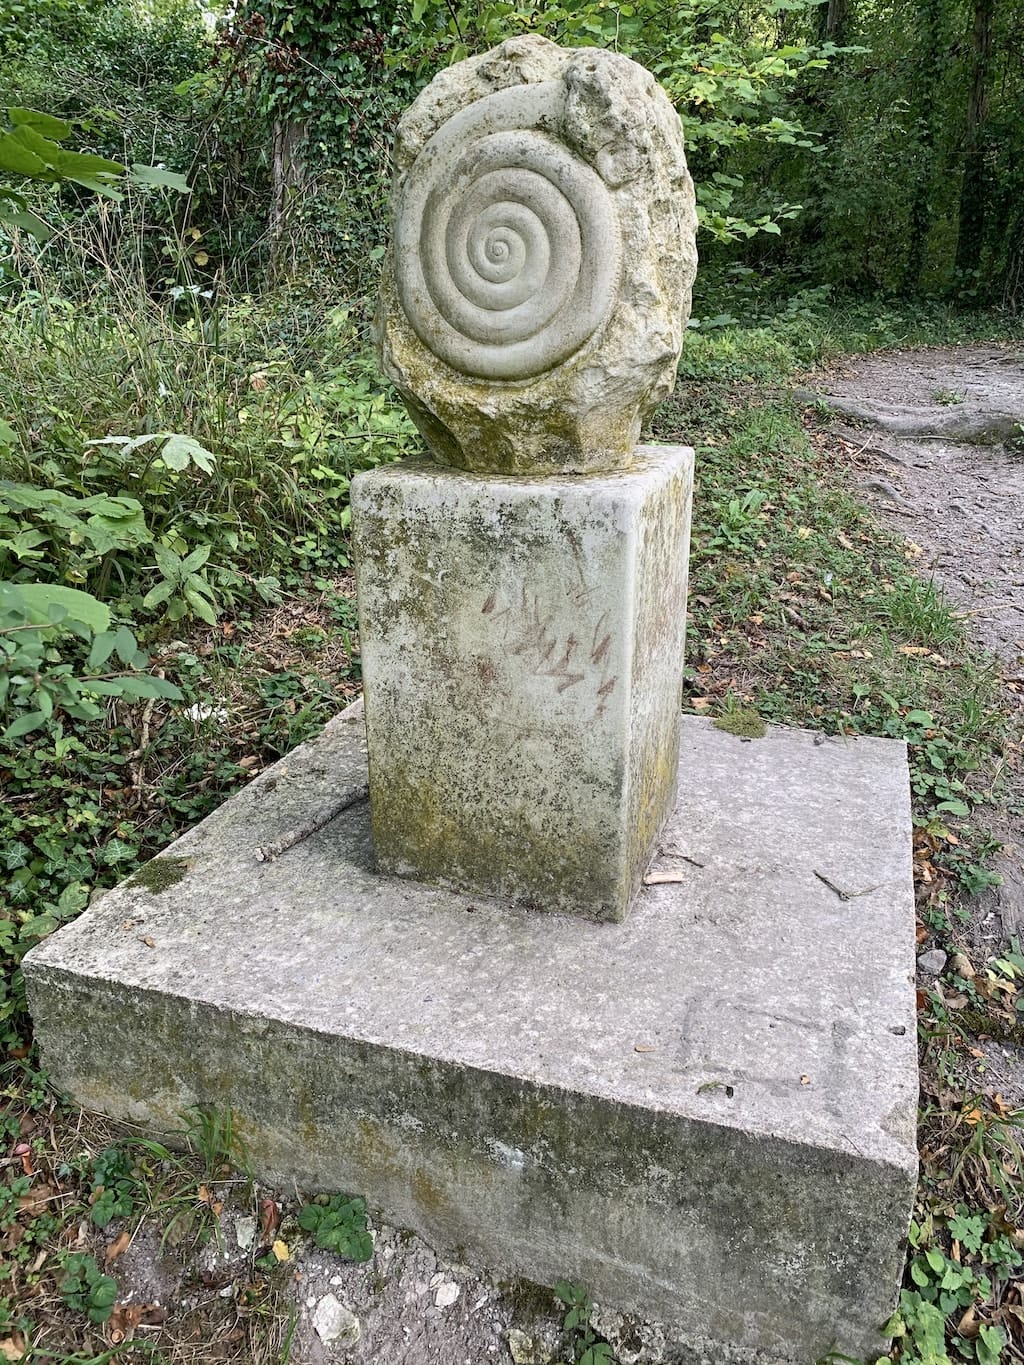 Snail sculpture